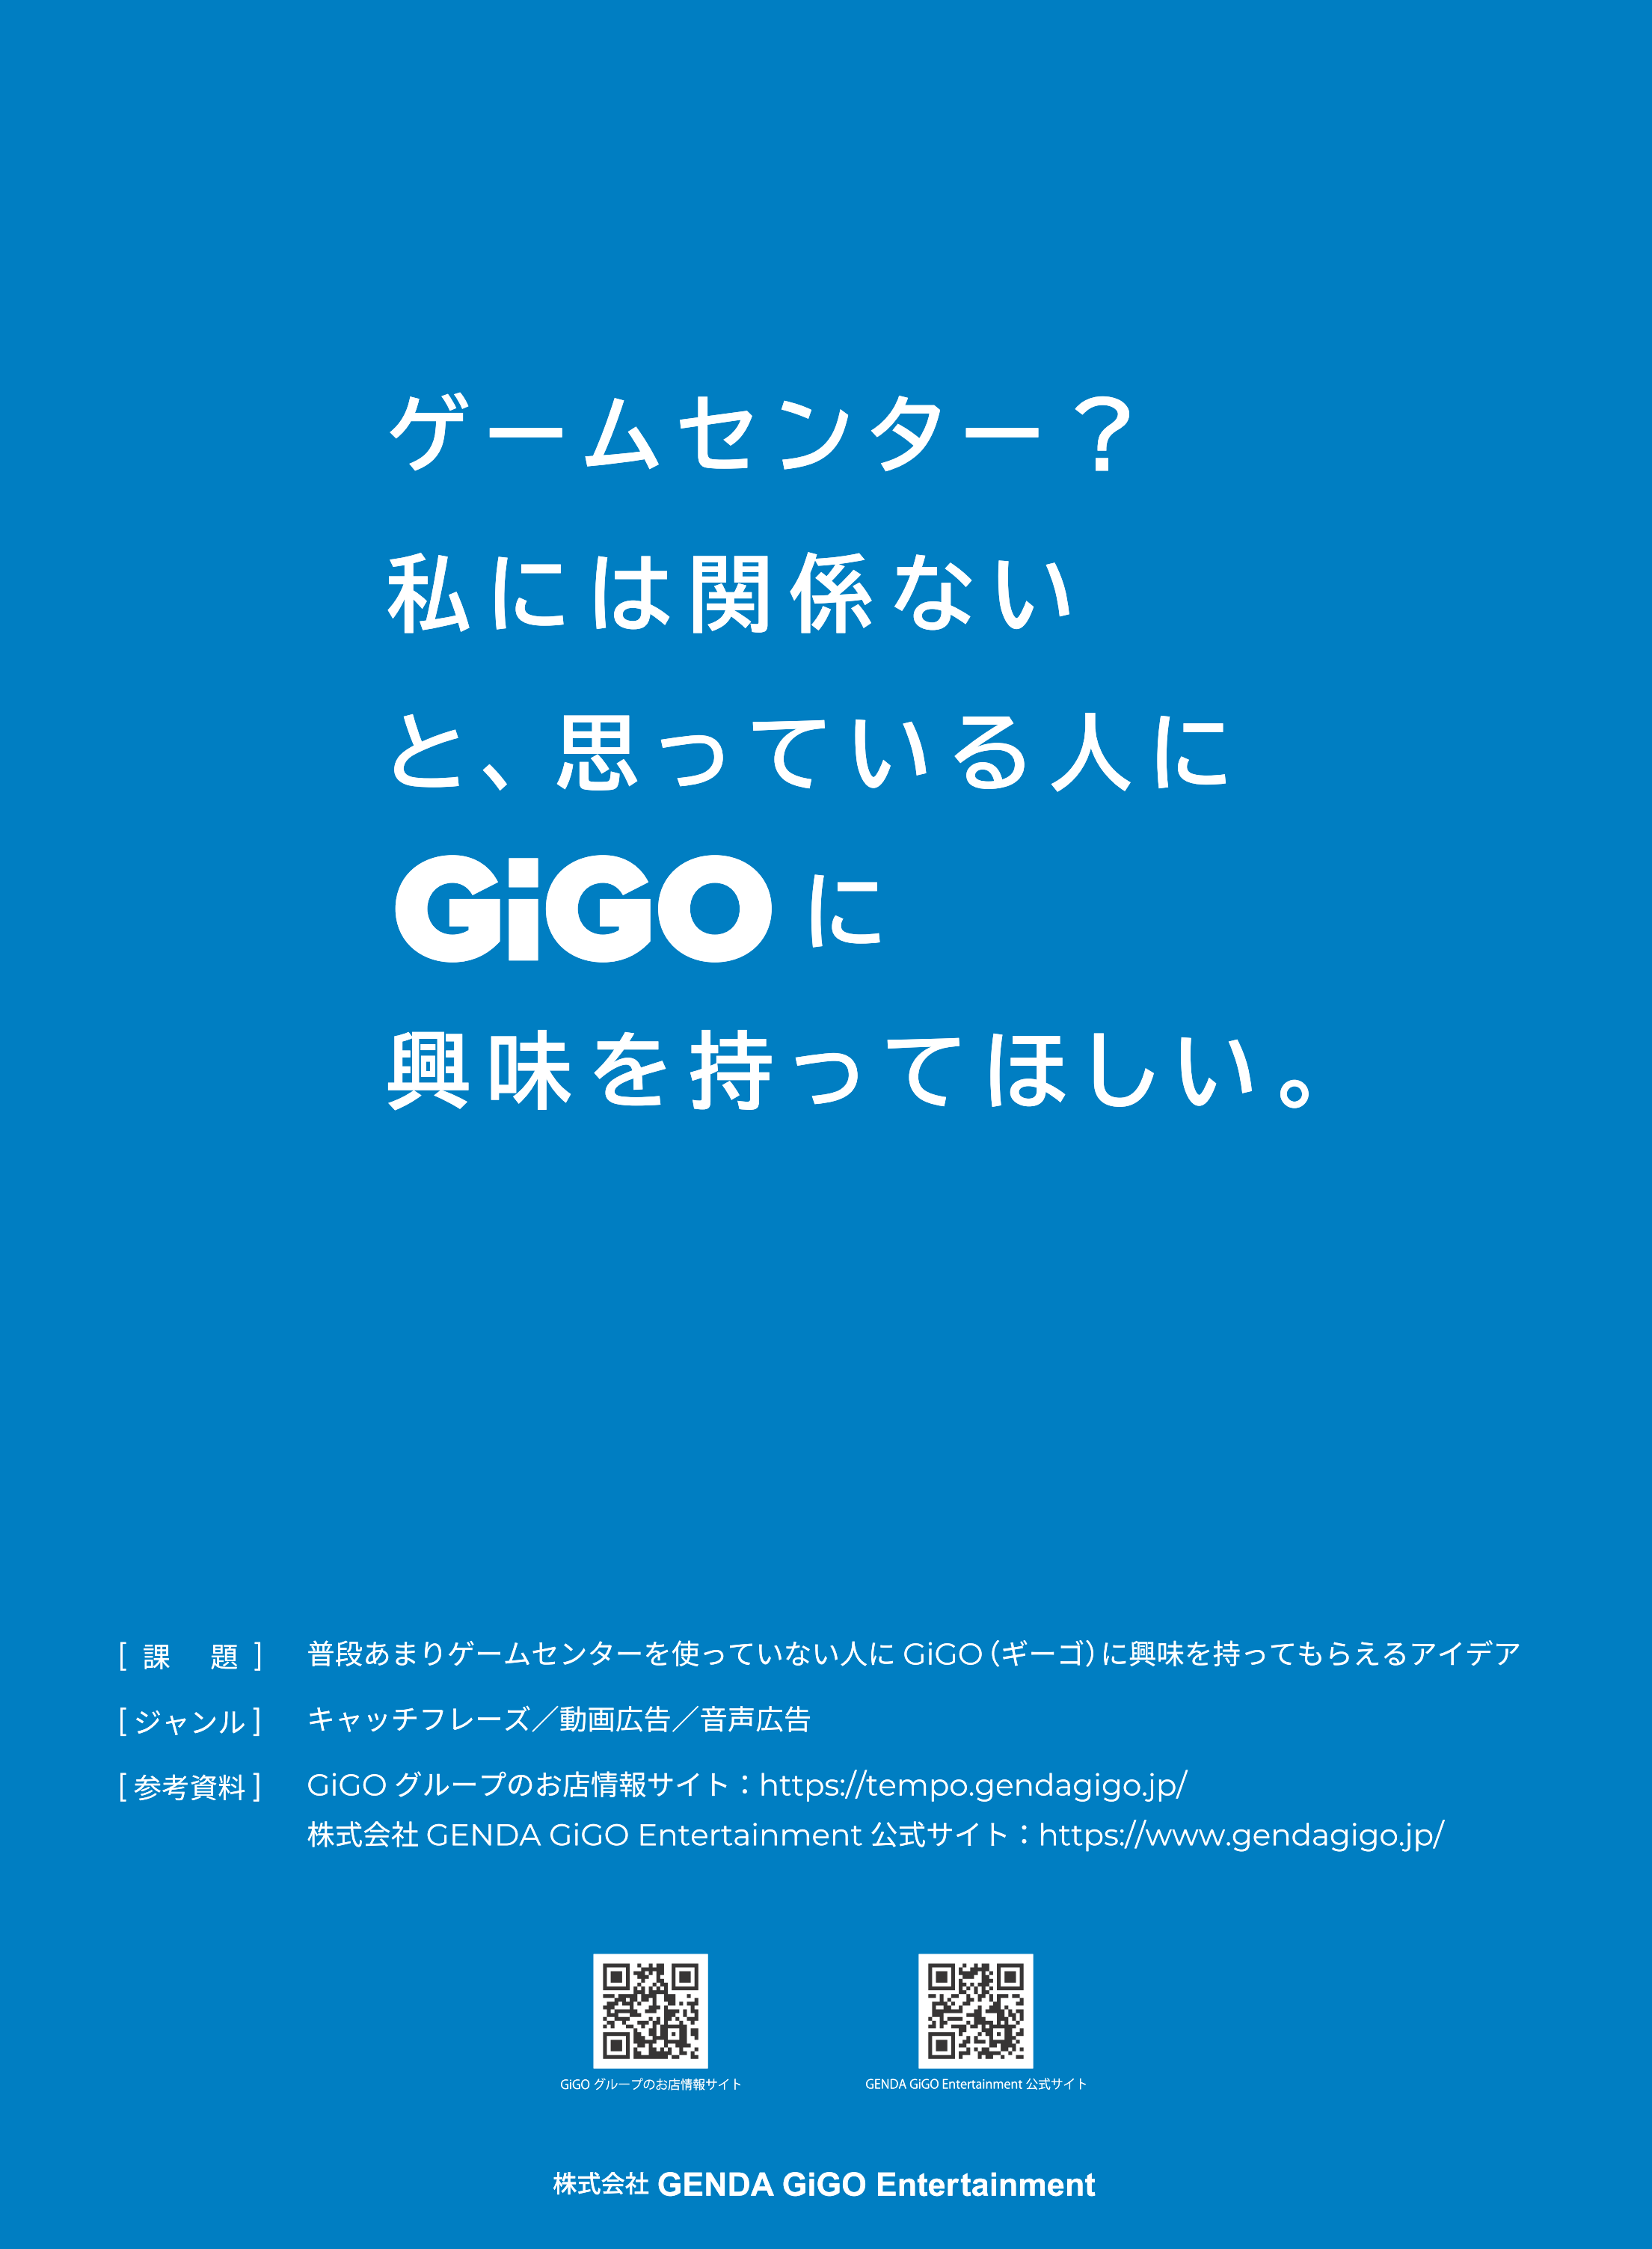 GENDA GiGO Entertainment